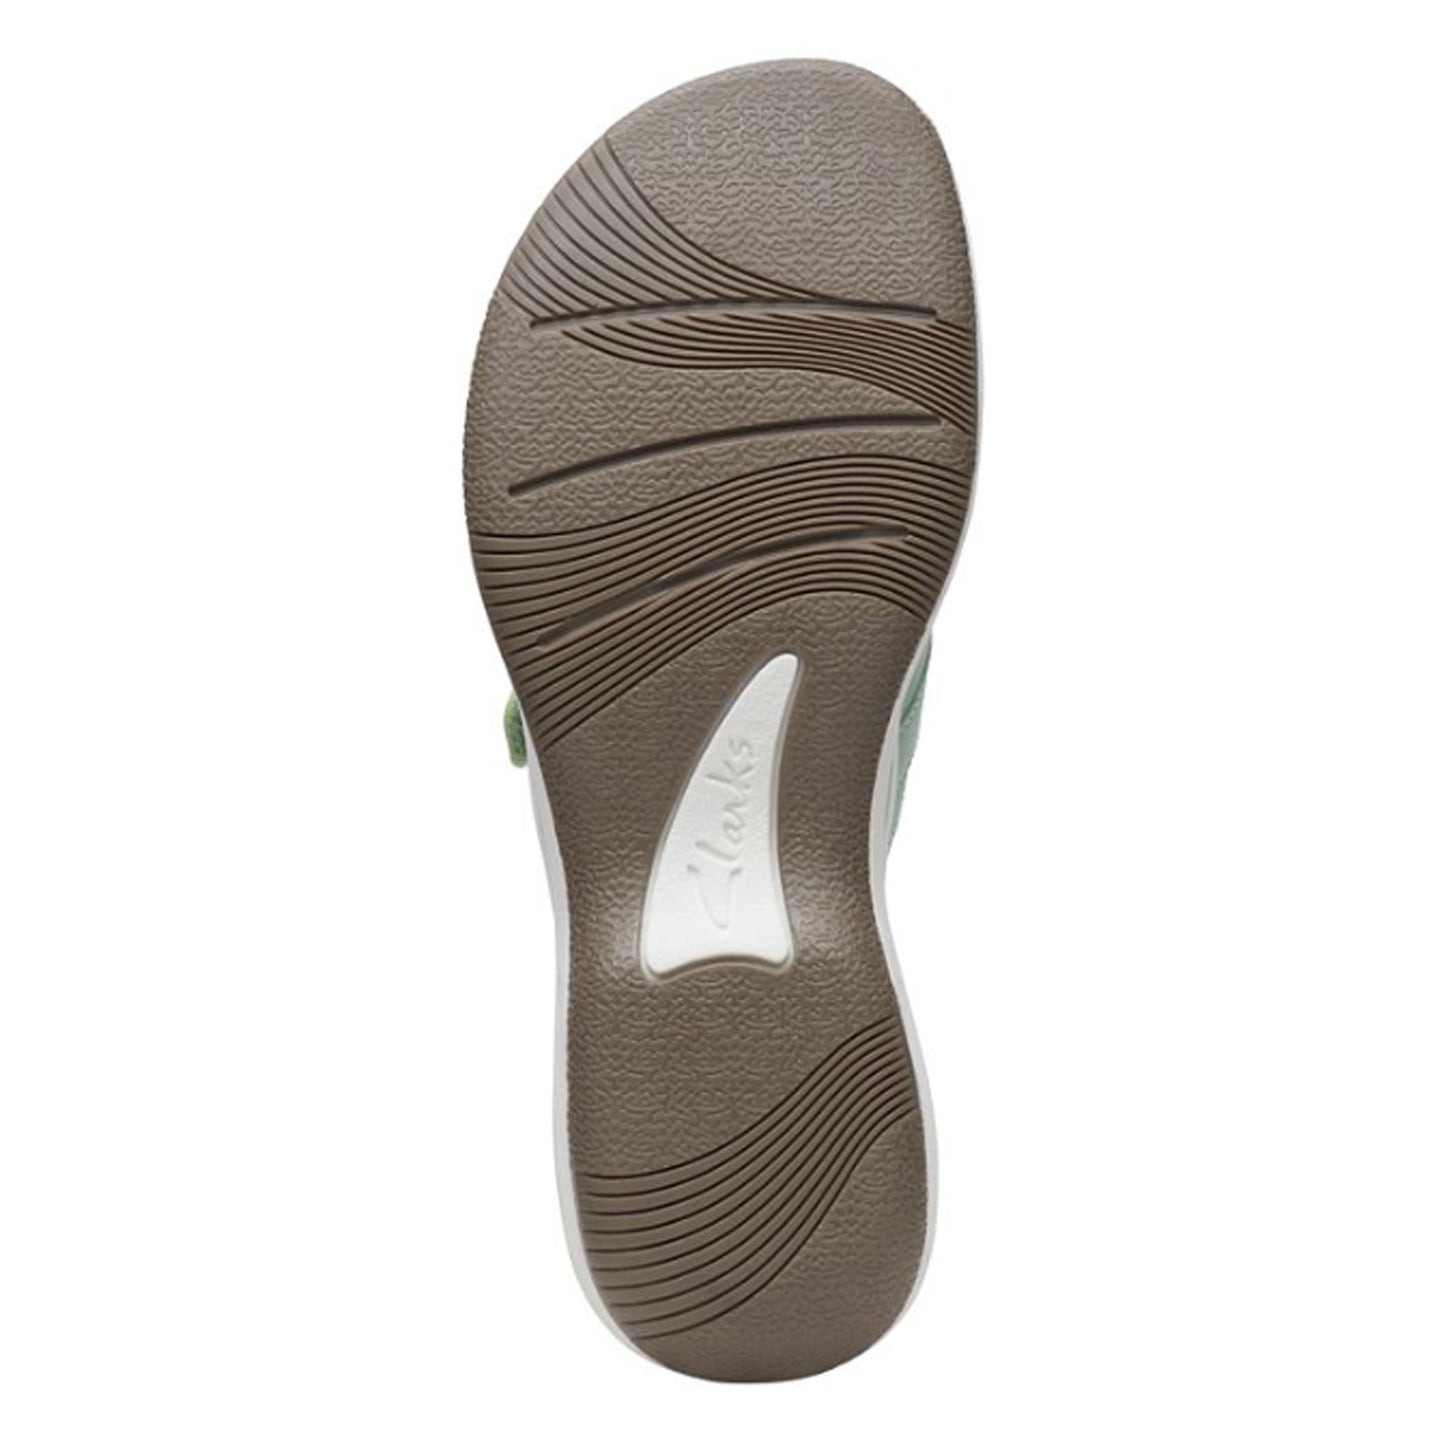 Peltz Shoes  Women's Clarks Breeze Sea Sandal GREEN 26169816